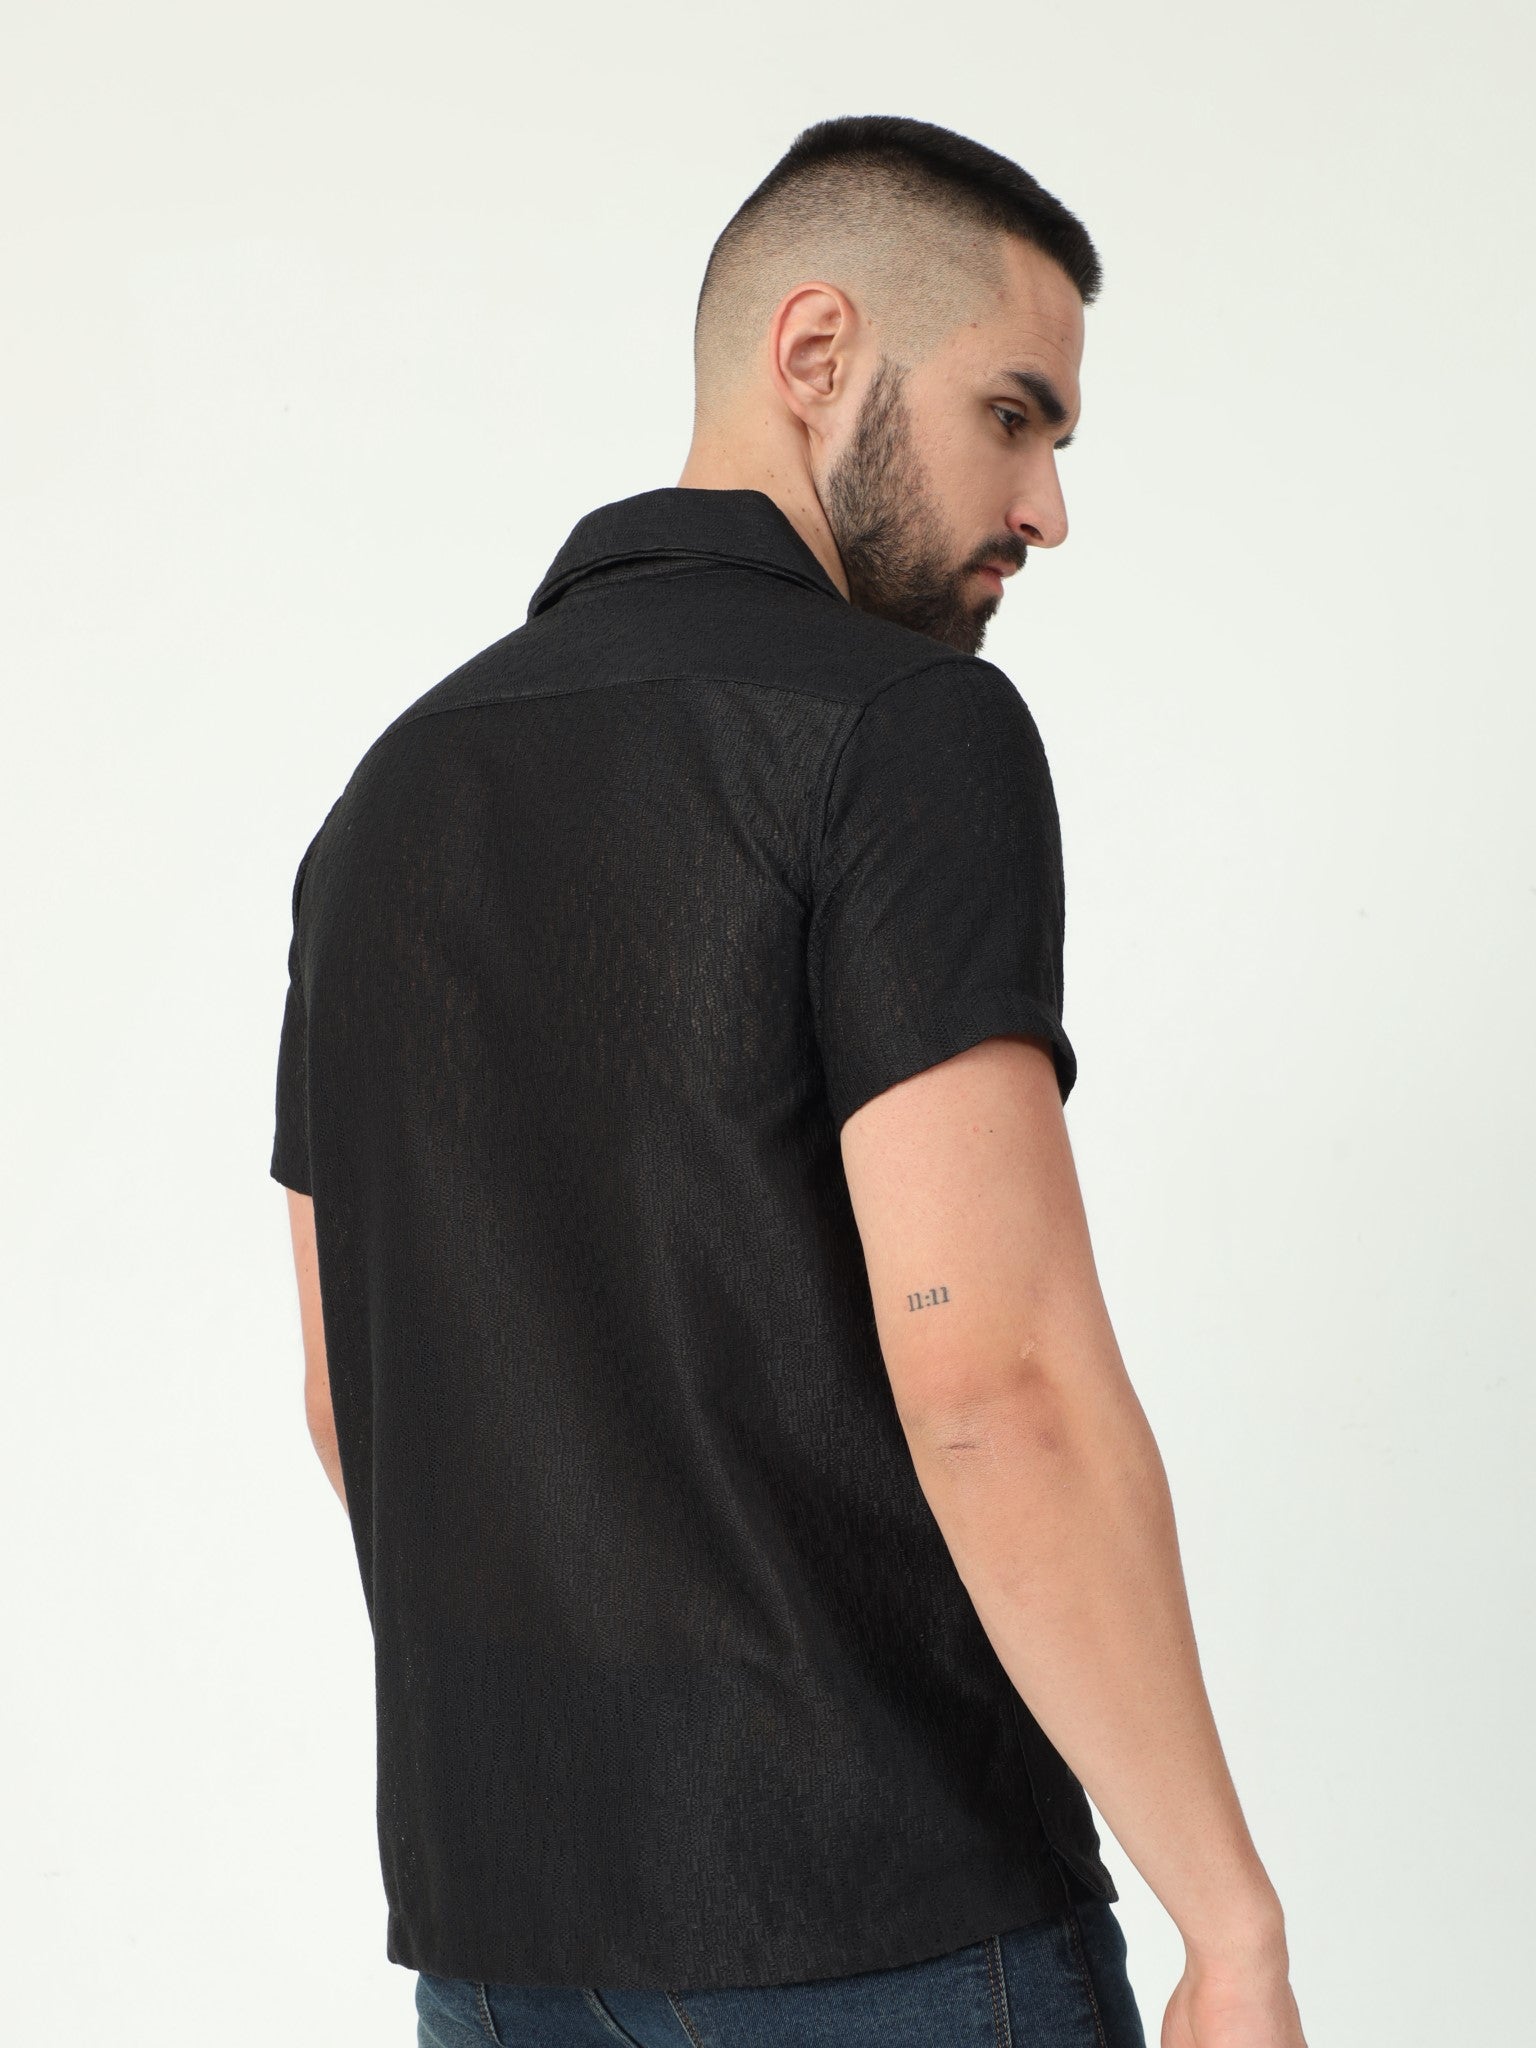 Lattice Black Crochet Shirt for Men